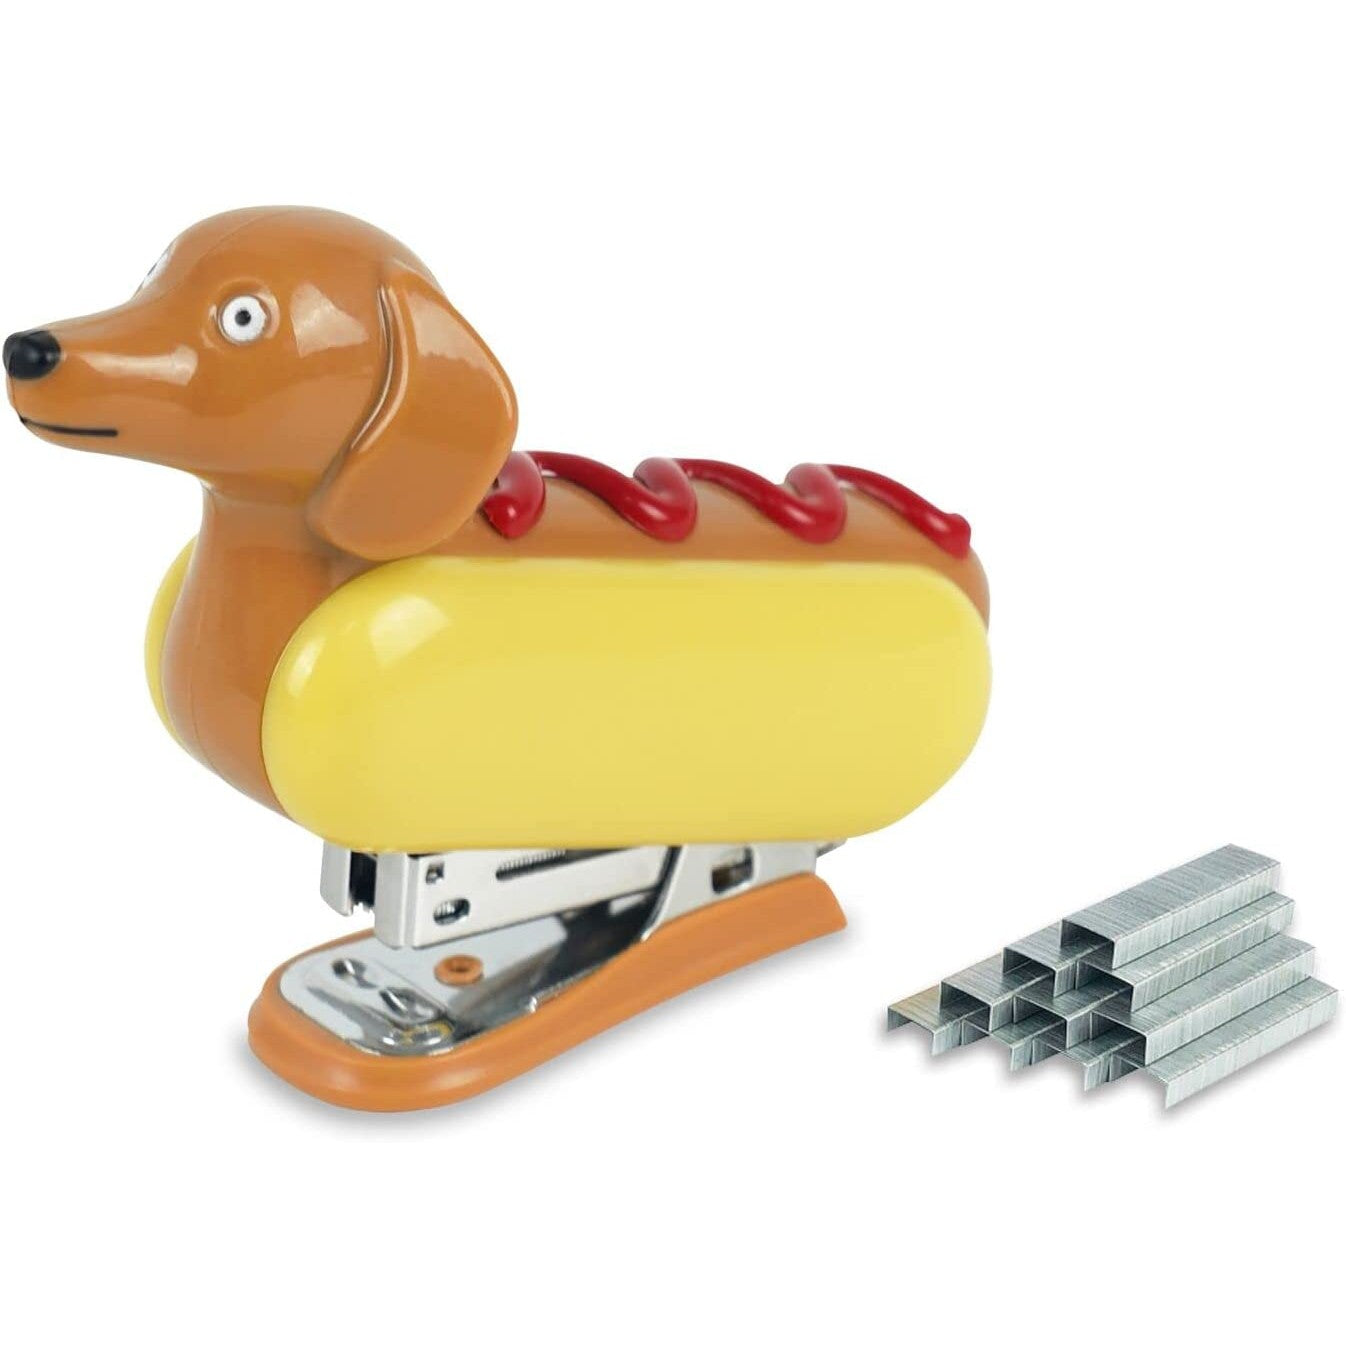 A stapler shaped like a hot dog.